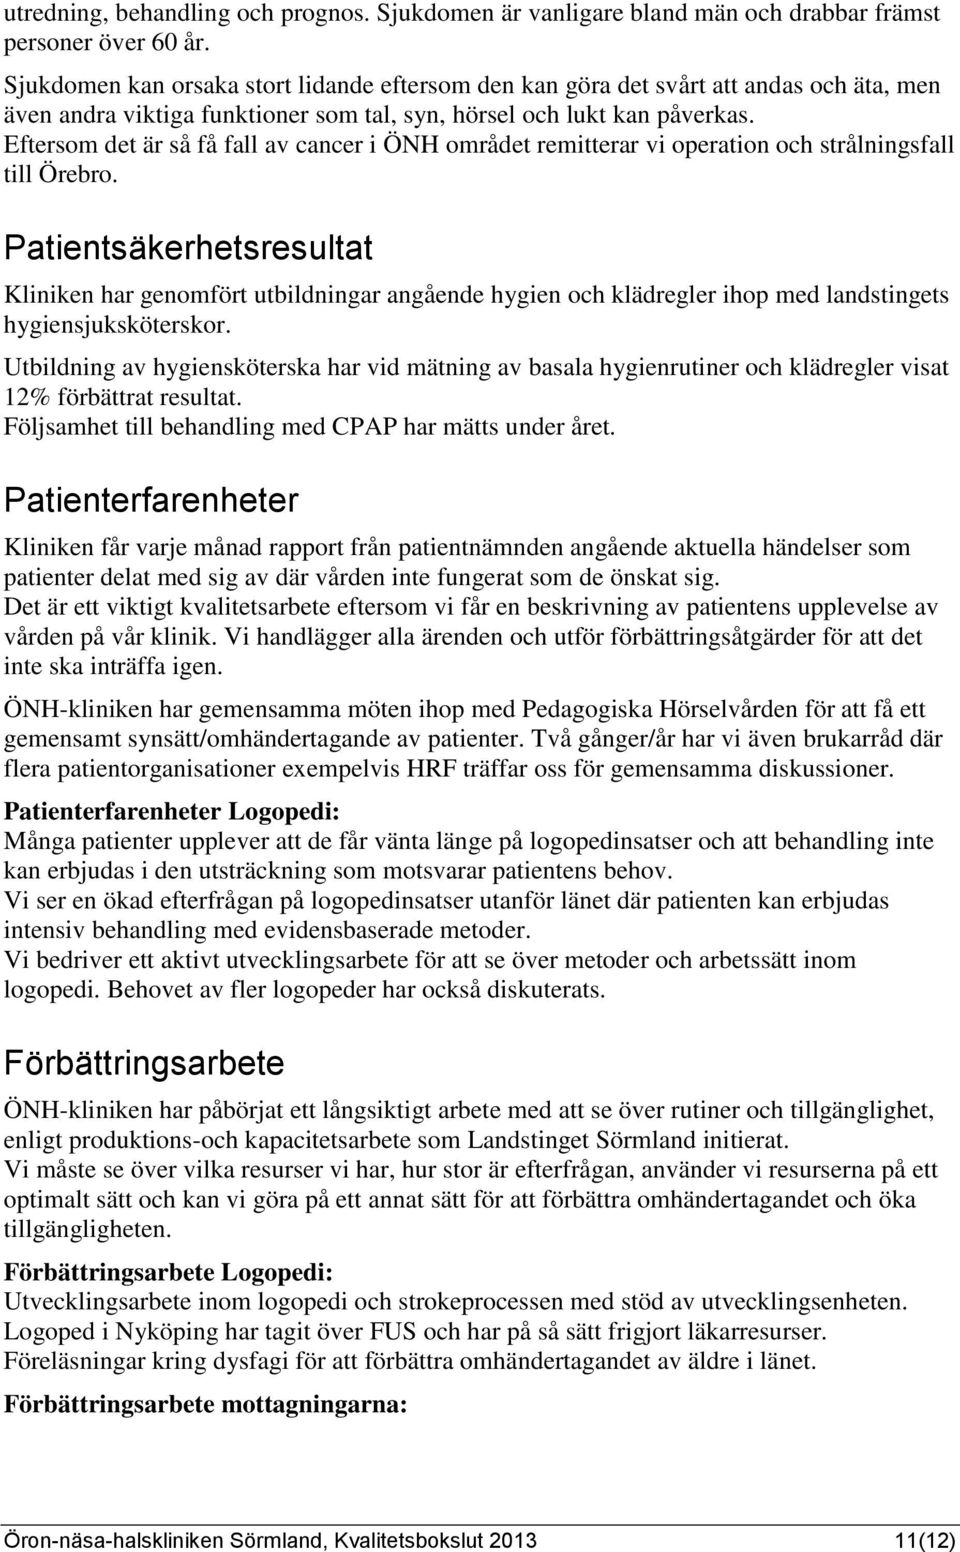 Eftersom det är så få fall av cancer i ÖNH området remitterar vi operation och strålningsfall till Örebro.